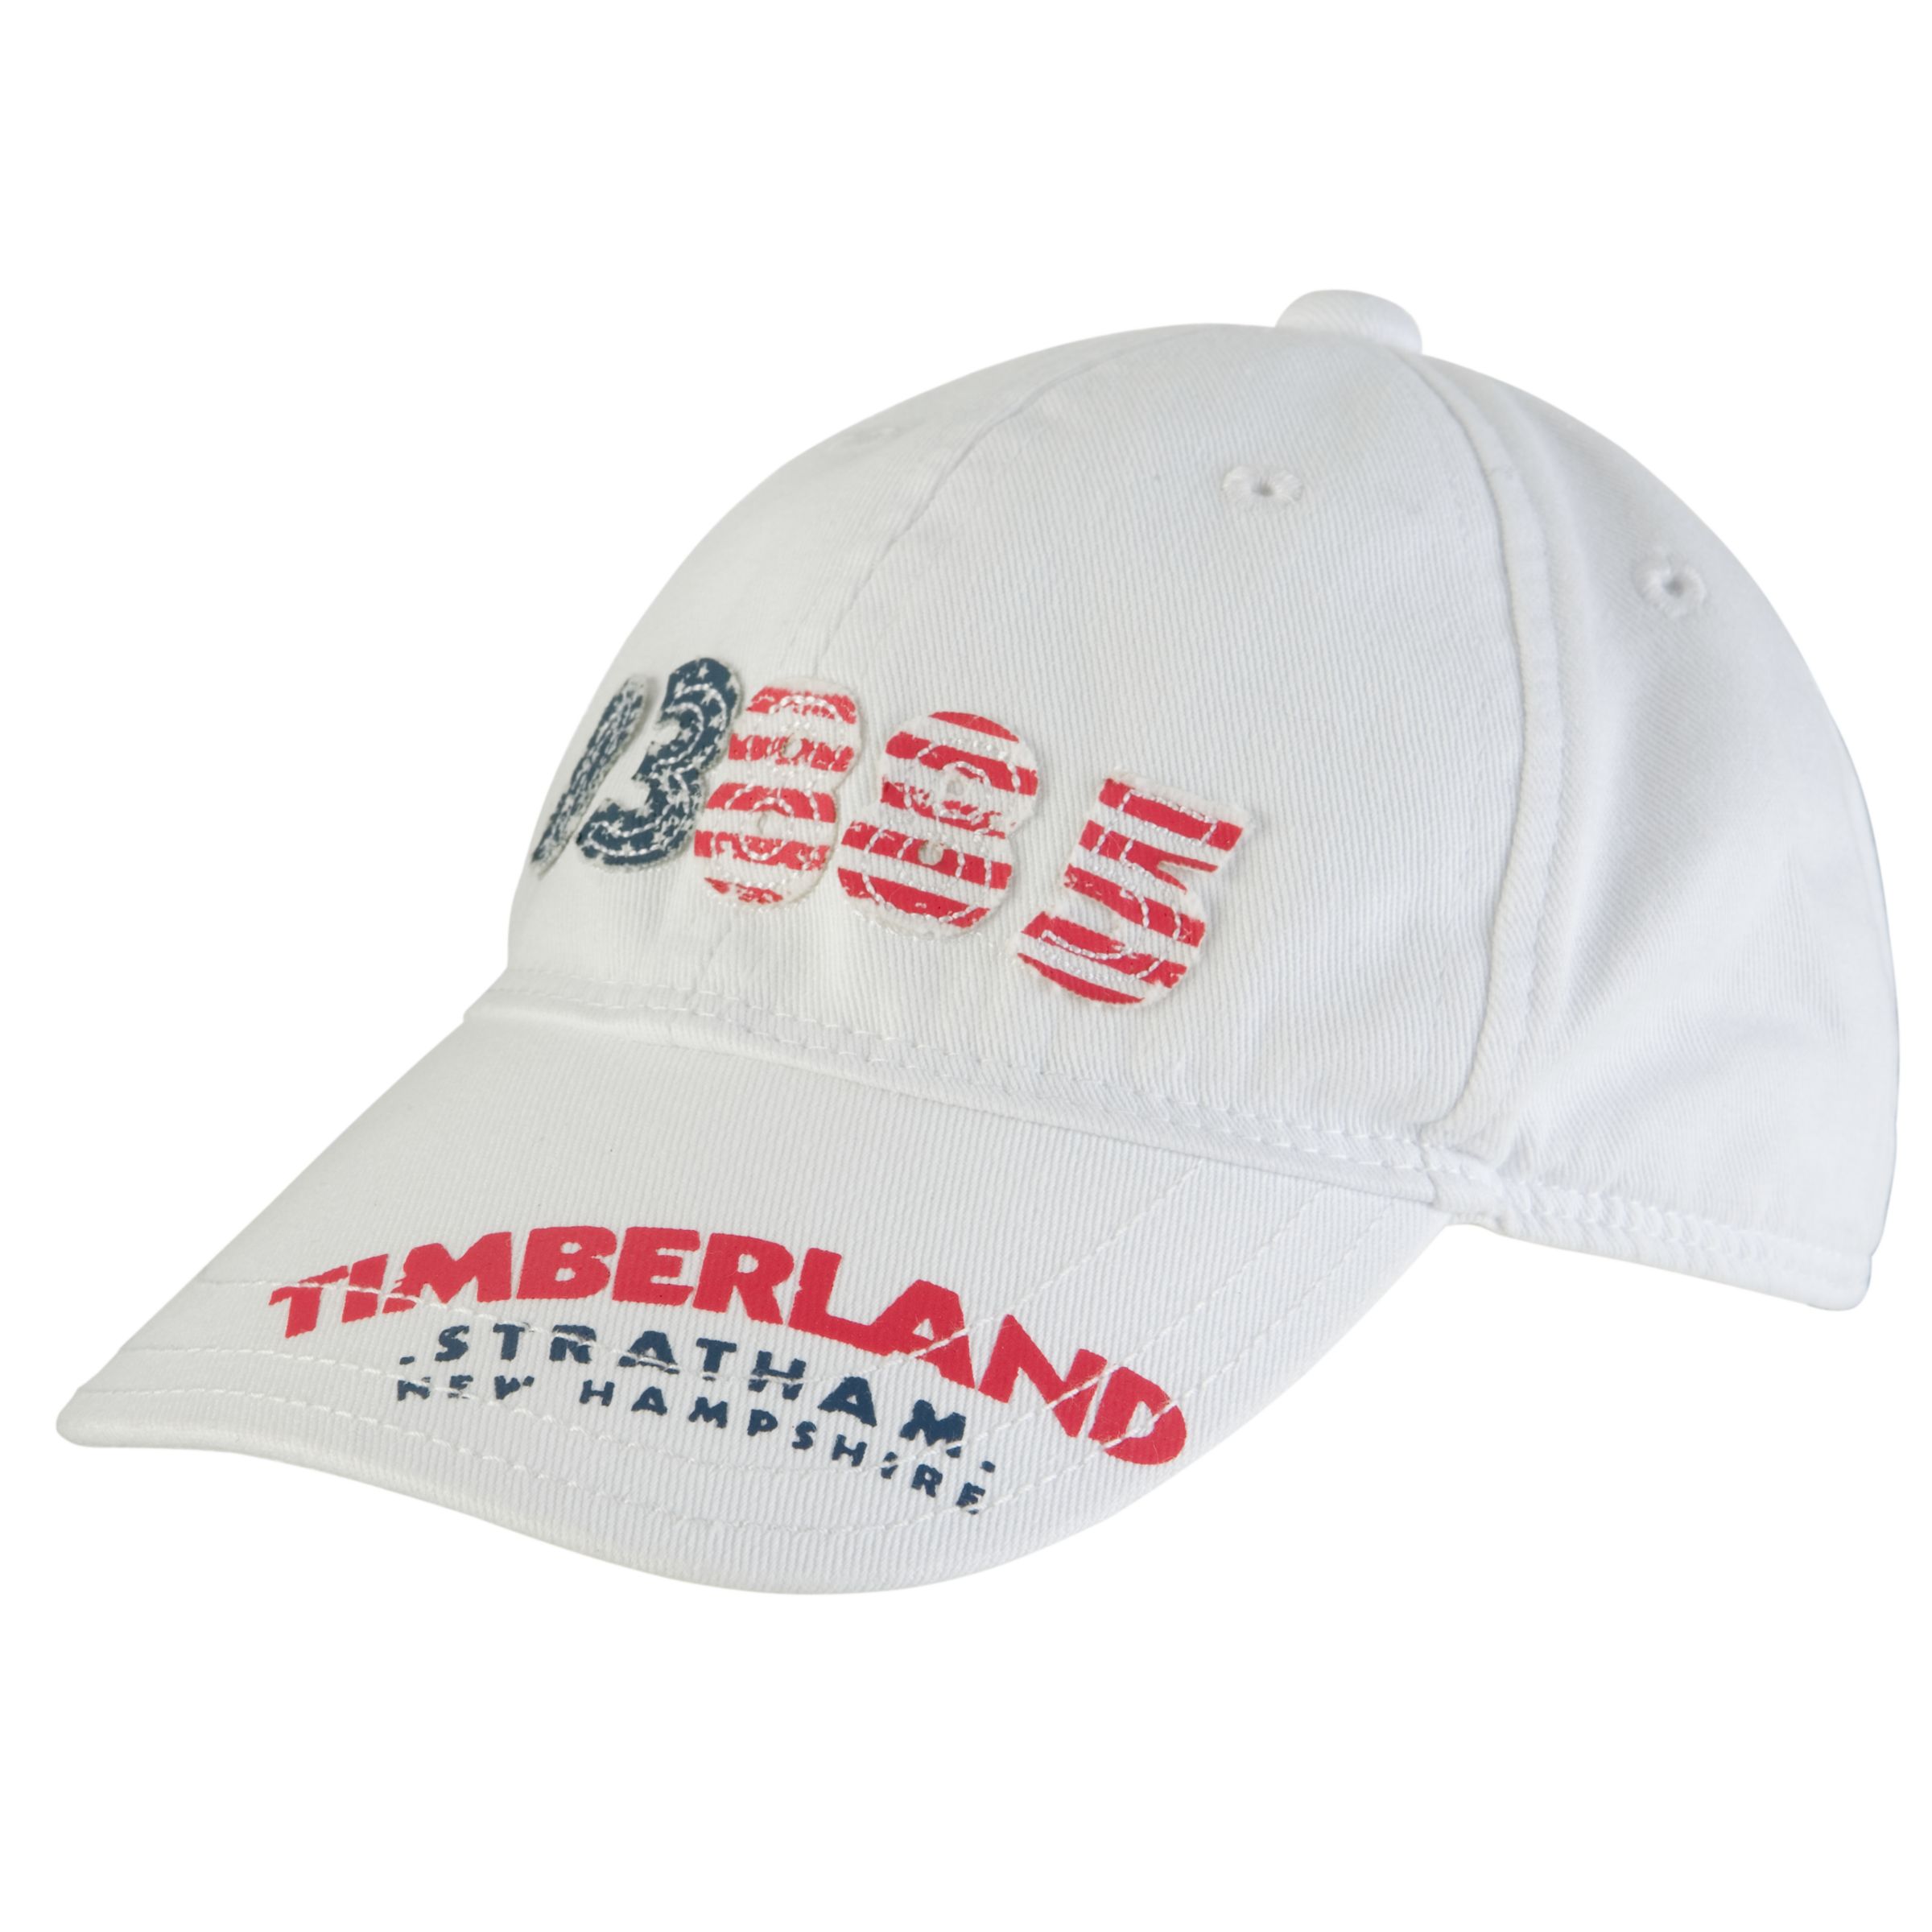 Timberland Baseball Cap, White